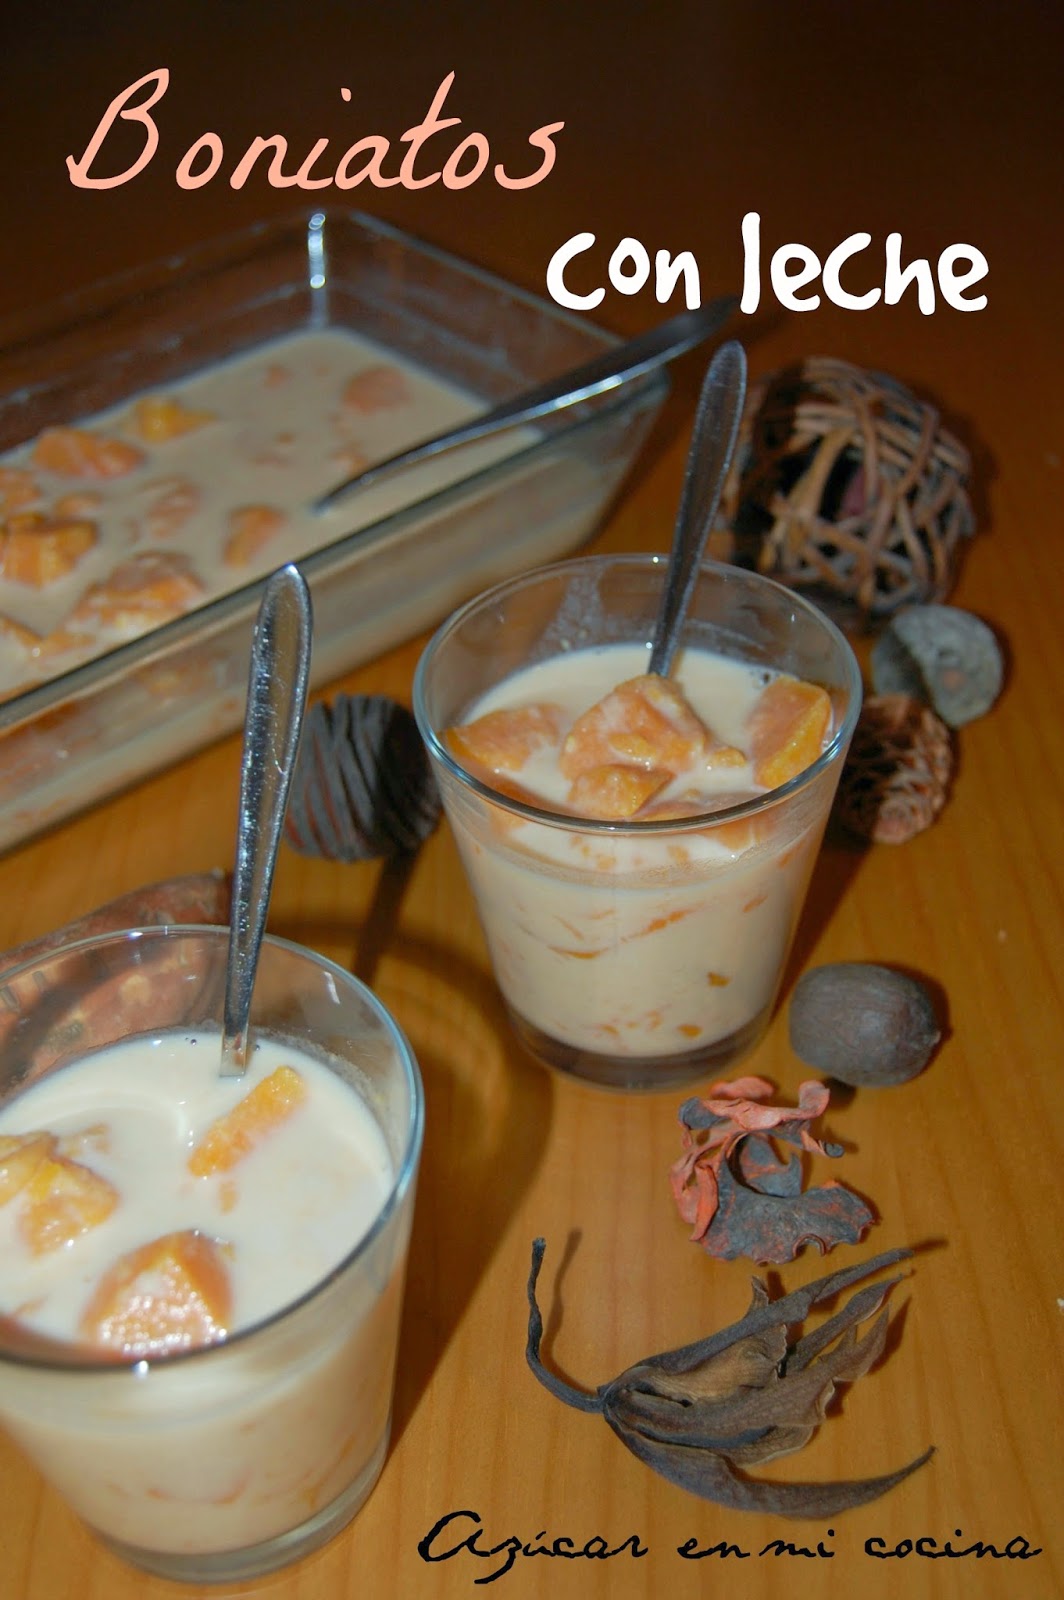 http://azucarenmicocina.blogspot.com.es/2014/10/boniatos-con-leche-recetas-de-siempre.html